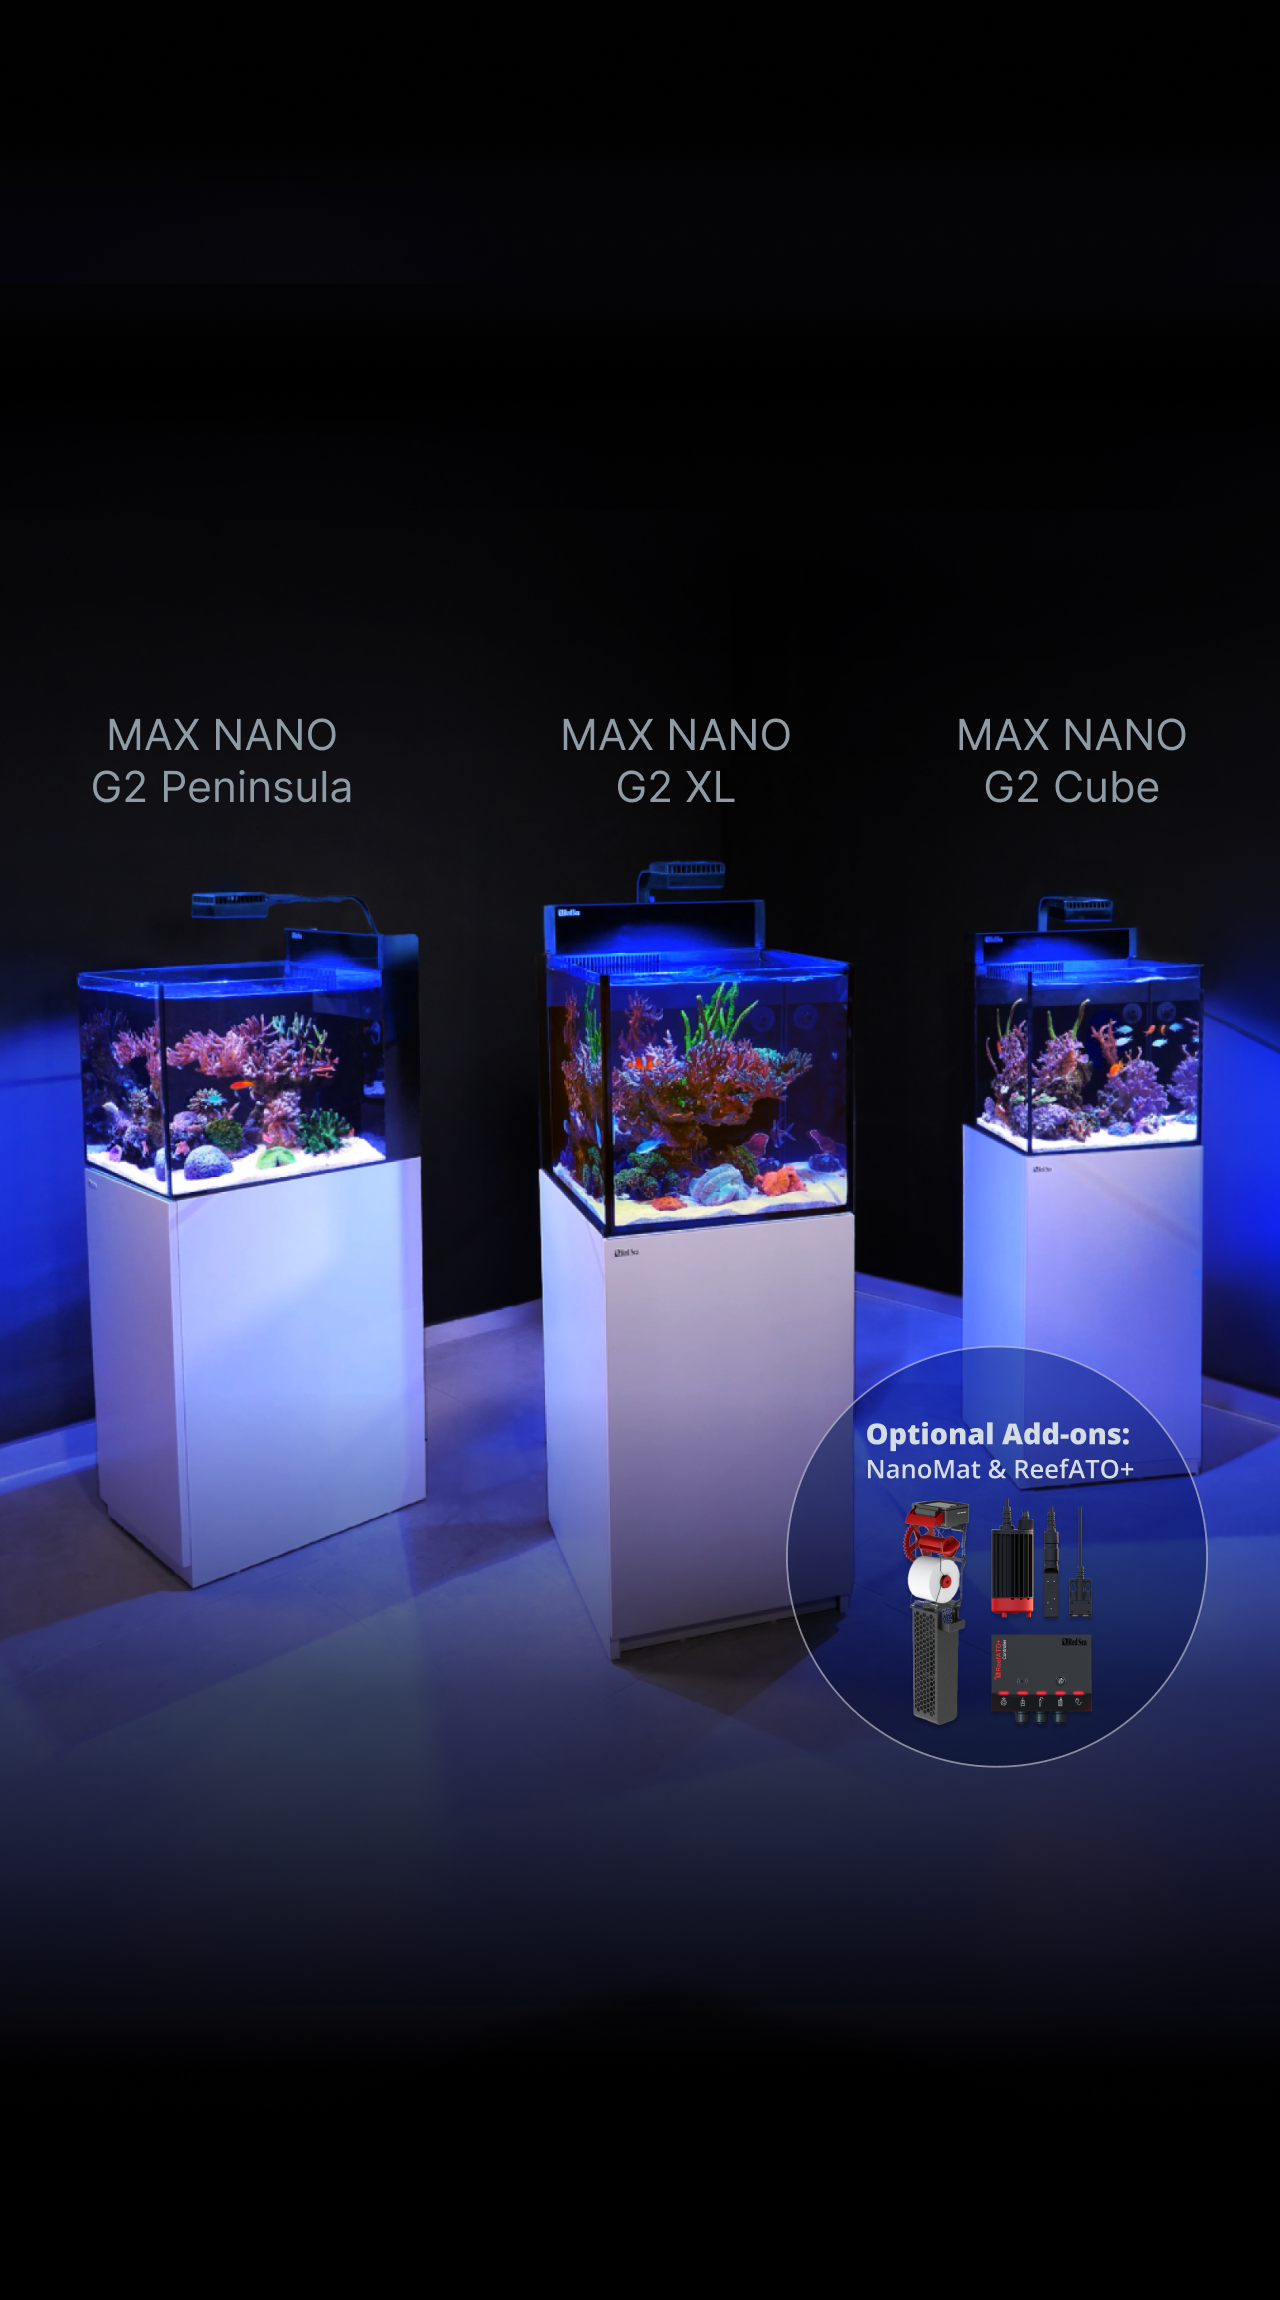 The MAX NANO G2 Series - Red Sea